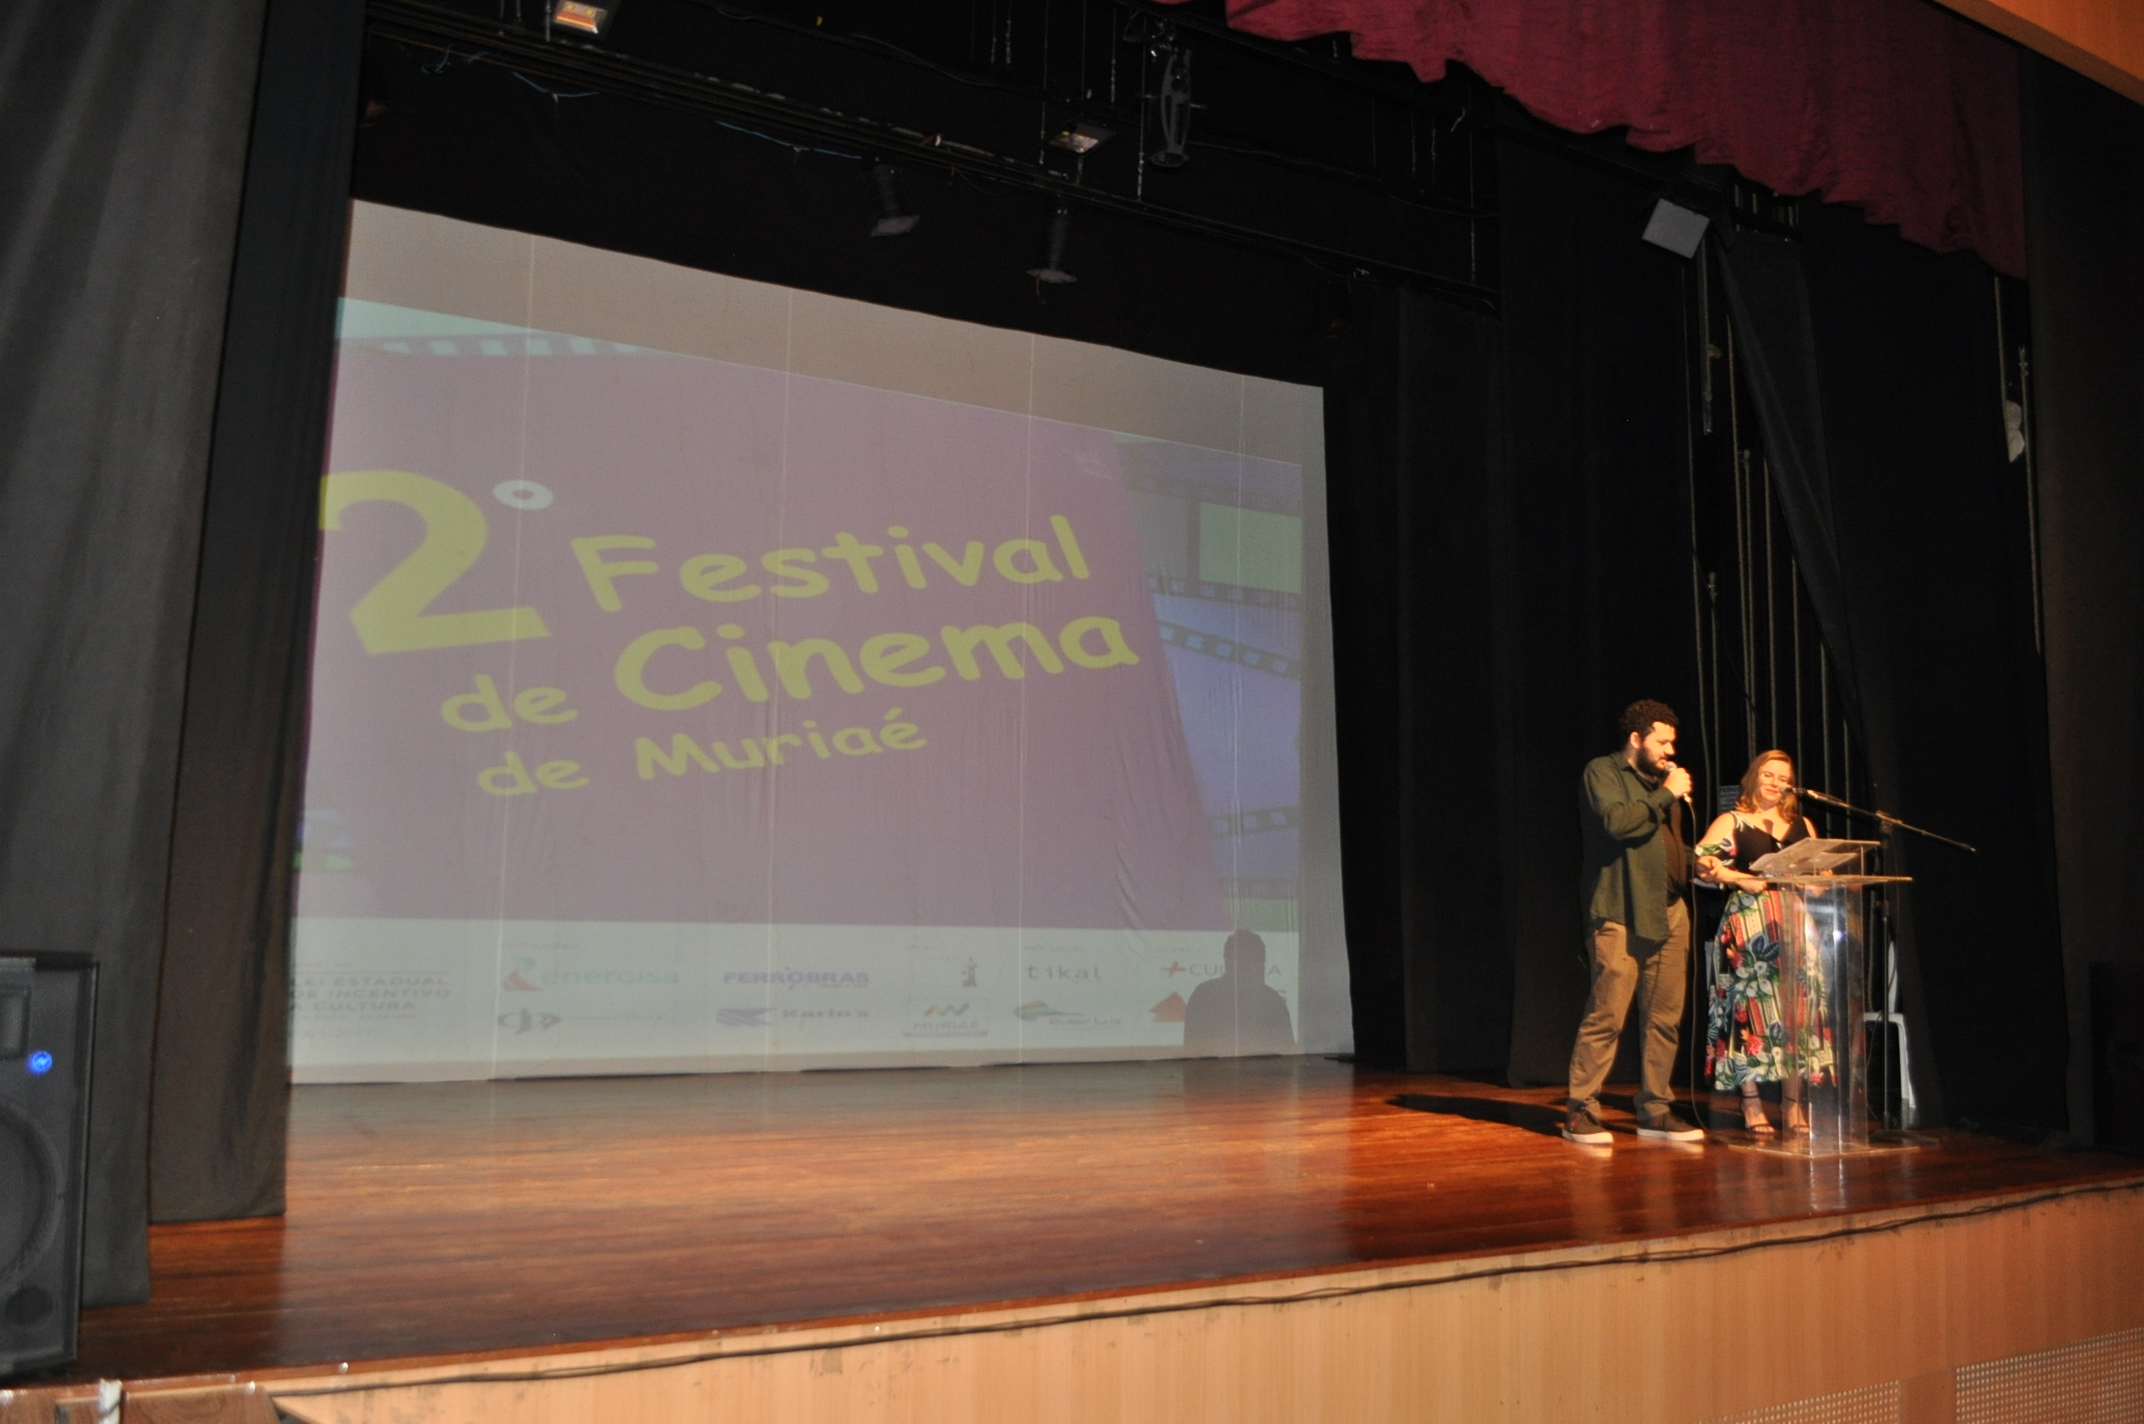 2018 - Festival de Cinema de Muriaé